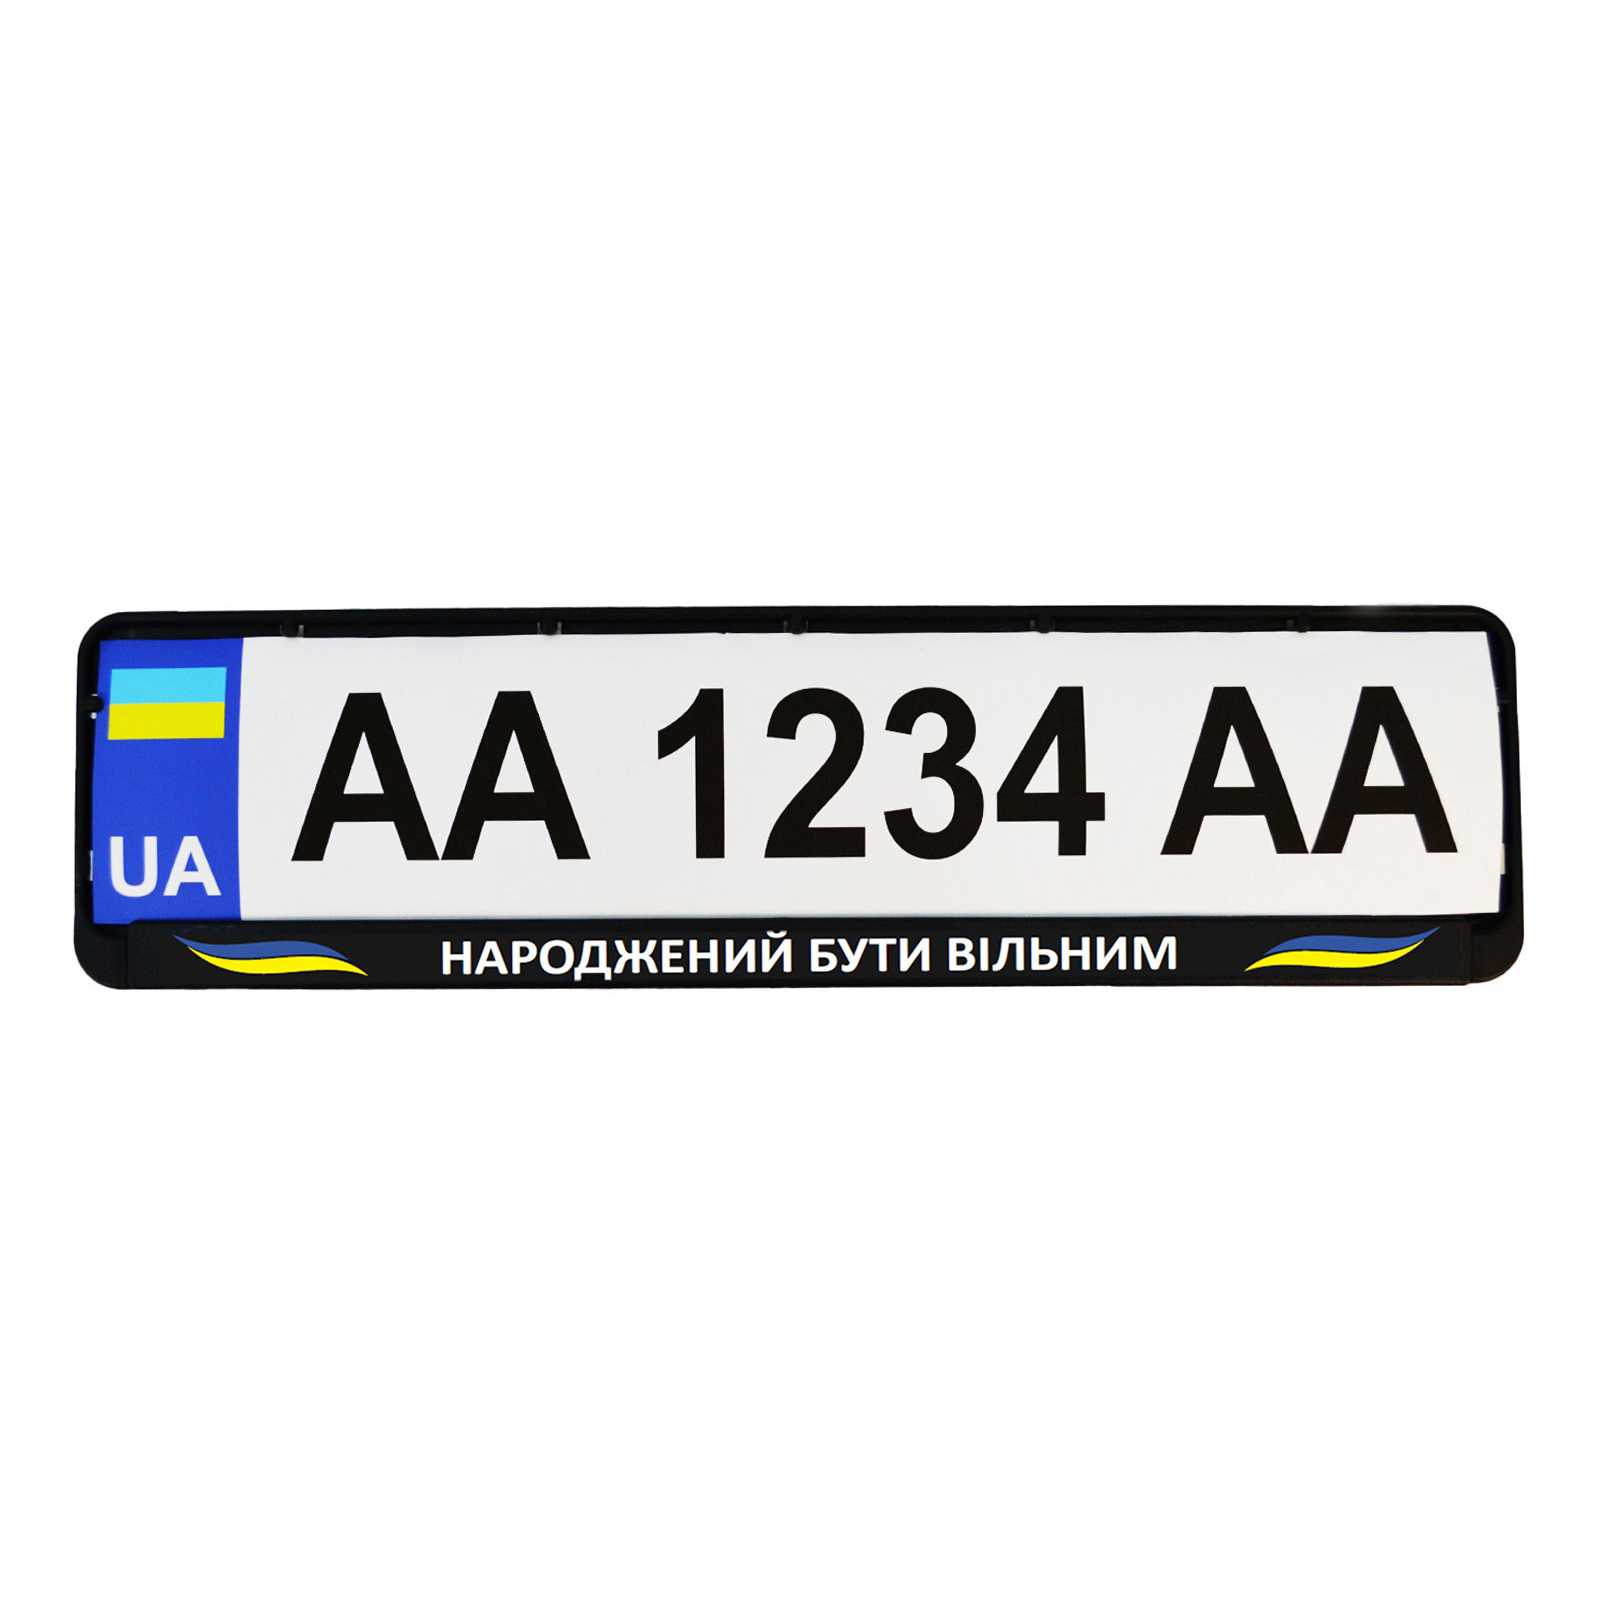 Рамка номерного знака Poputchik "НАРОДЖЕНИЙ БУТИ ВІЛЬНИМ" (24-270-IS) изображение 2